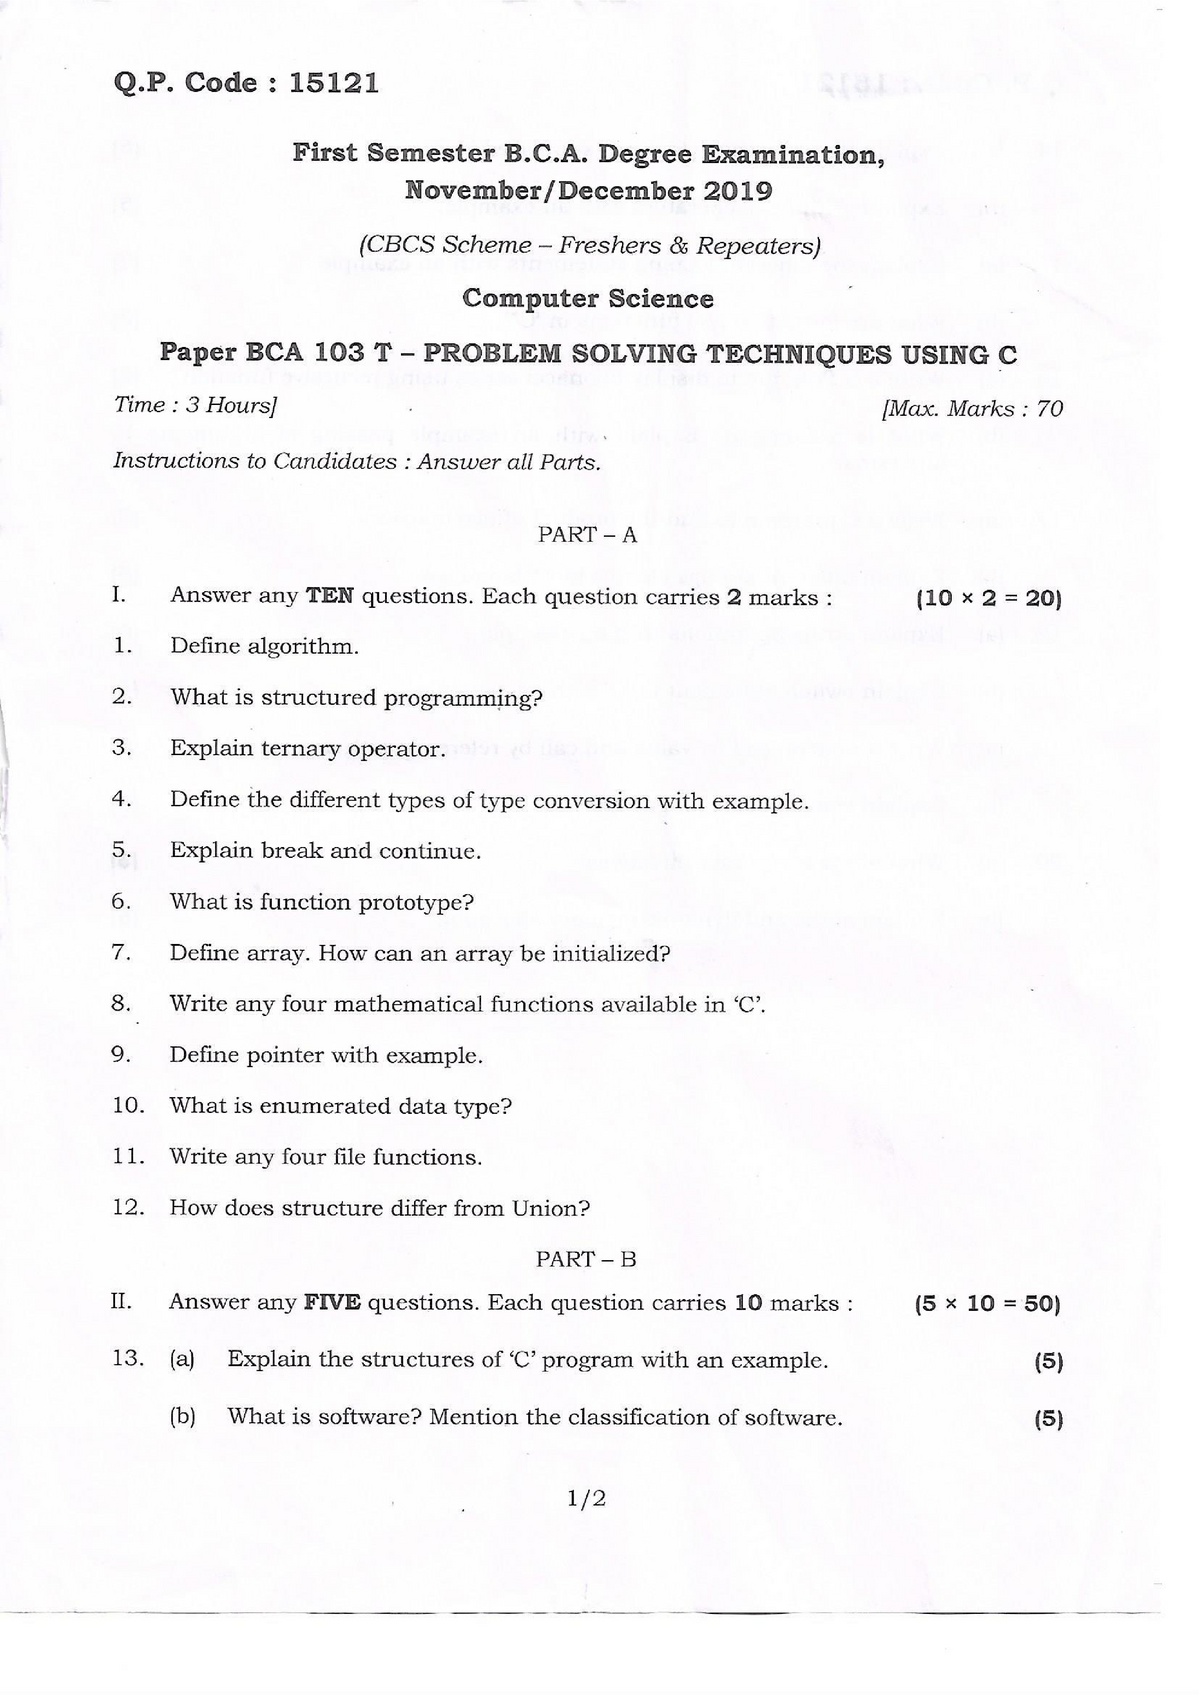 problem solving techniques using c pdf